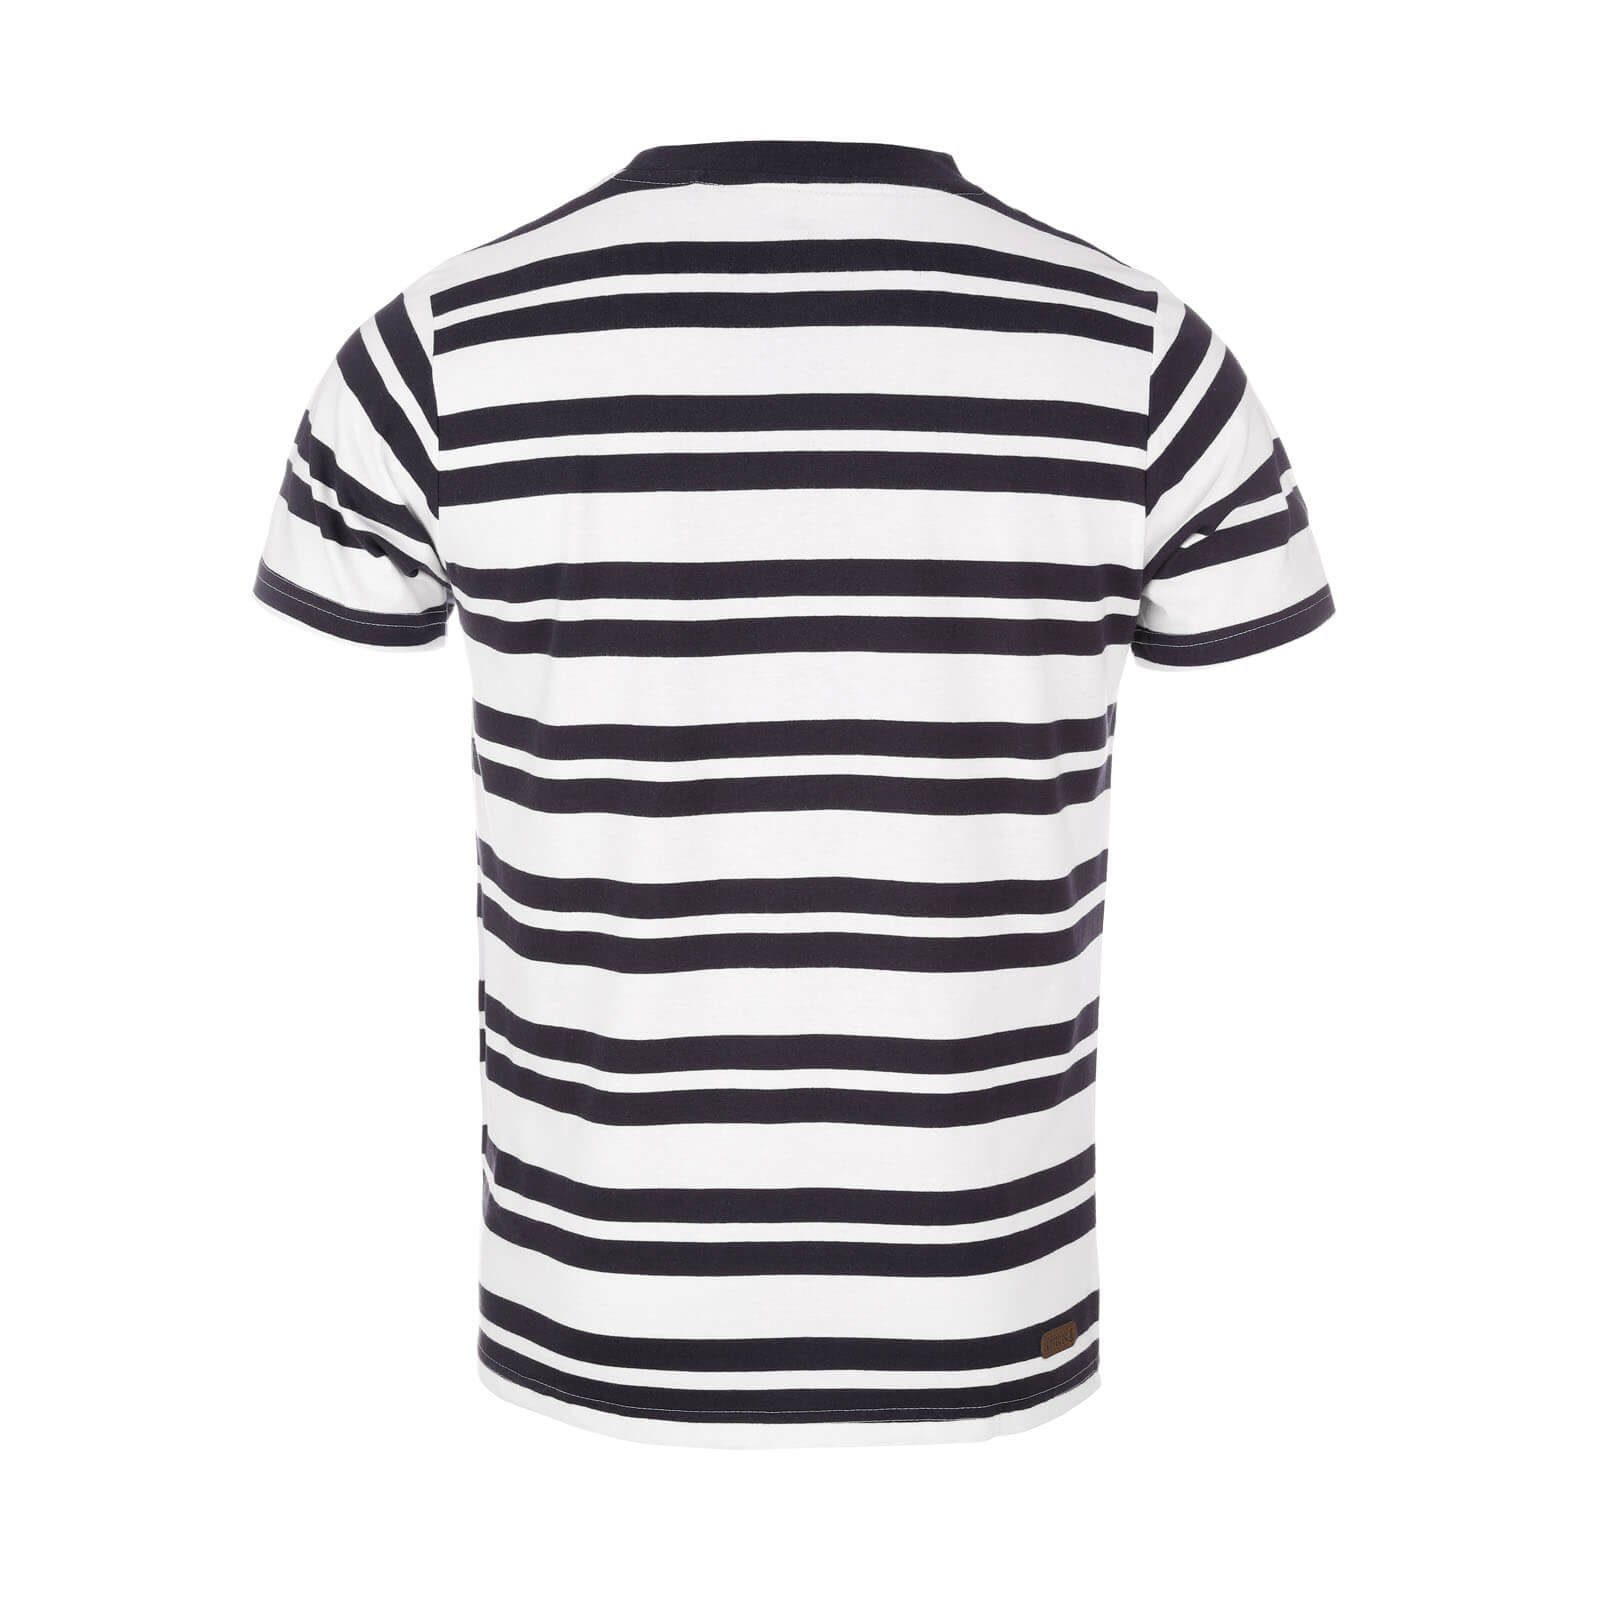 Leitfeuer T-Shirt Herren mit navy mit dark Kurzarm-Shirt Rundhals - Sommershirt Allover-Streifen white 